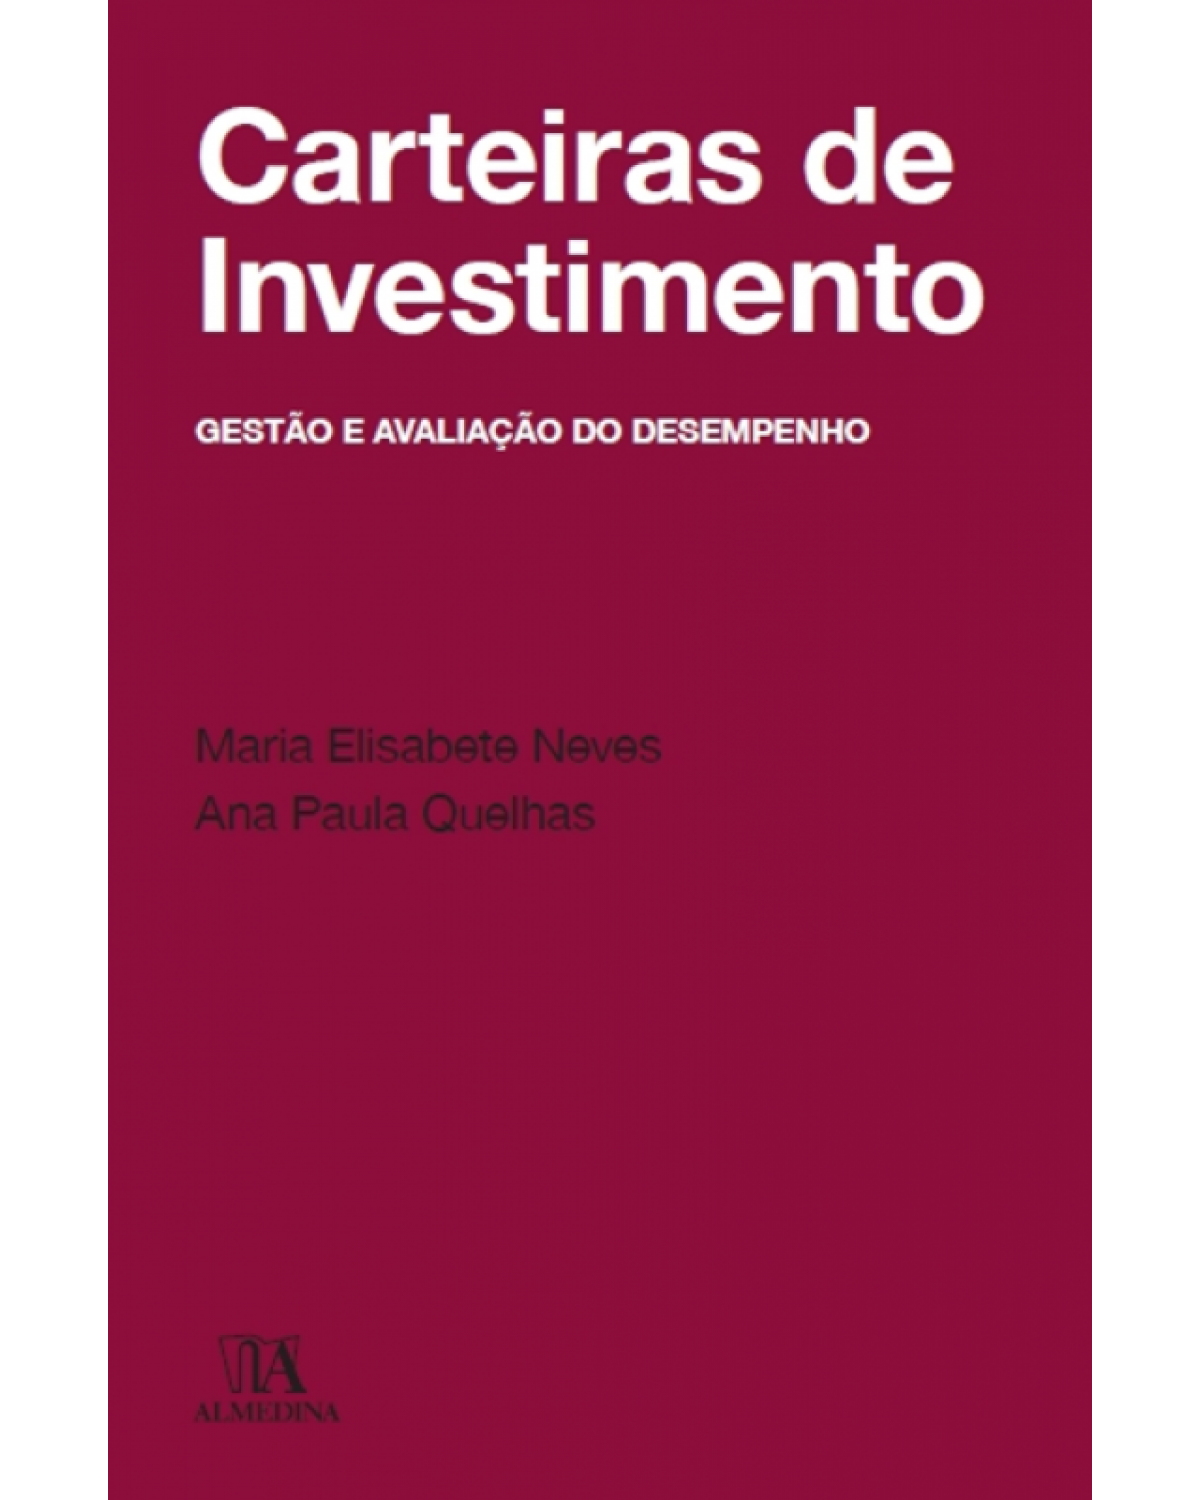 Carteiras de investimento - gestão e avaliação do desempenho - 1ª Edição | 2013